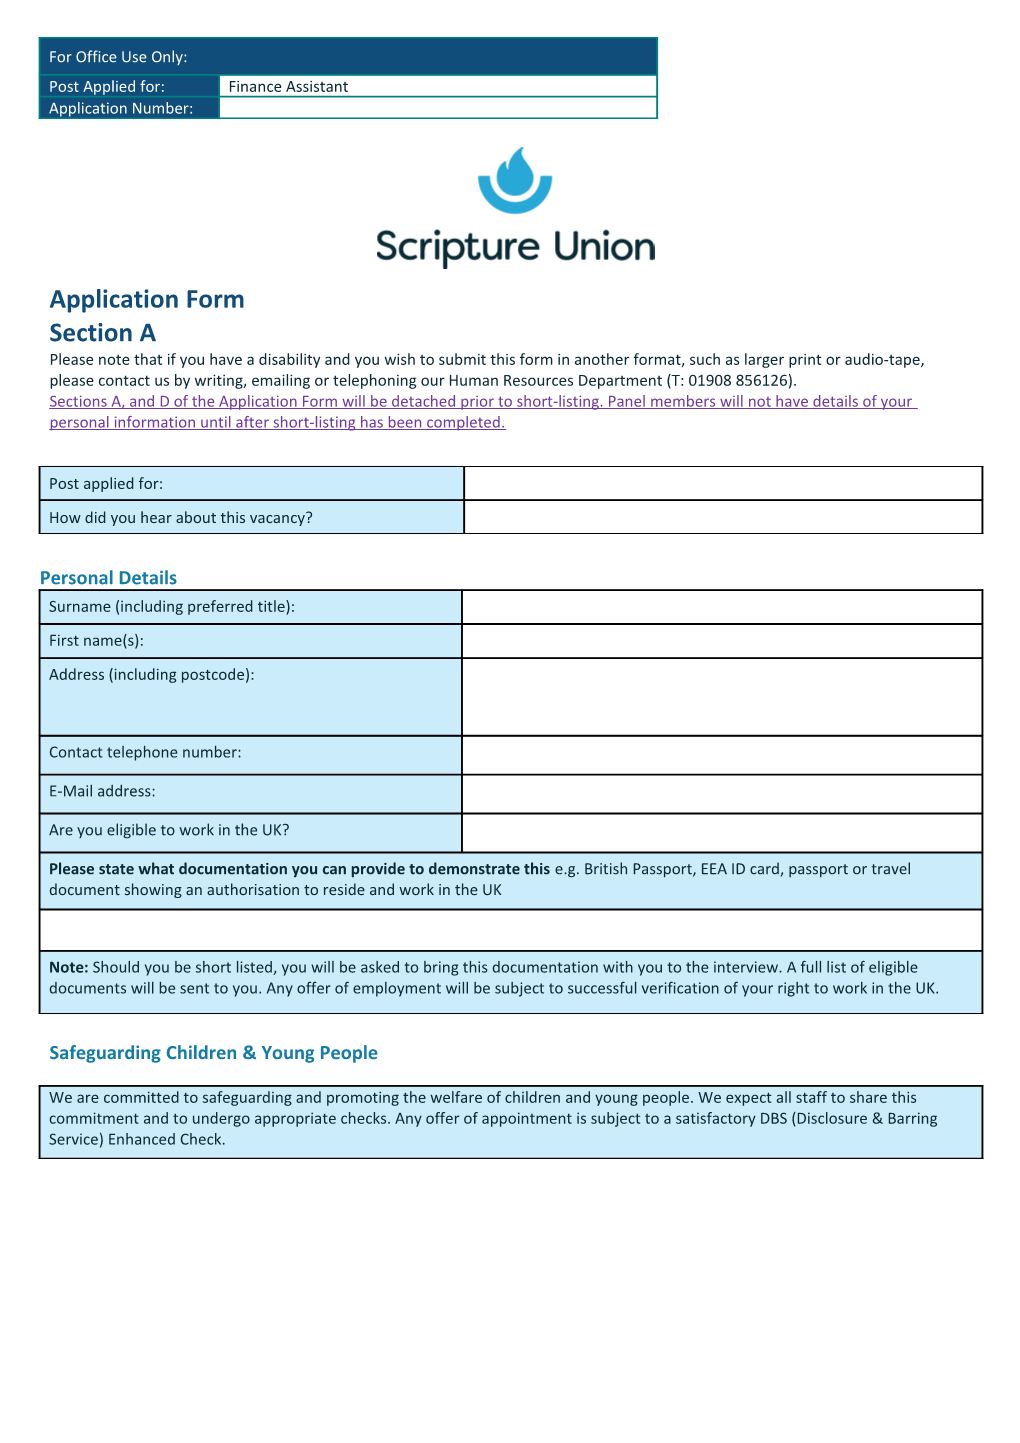 SU Application Form